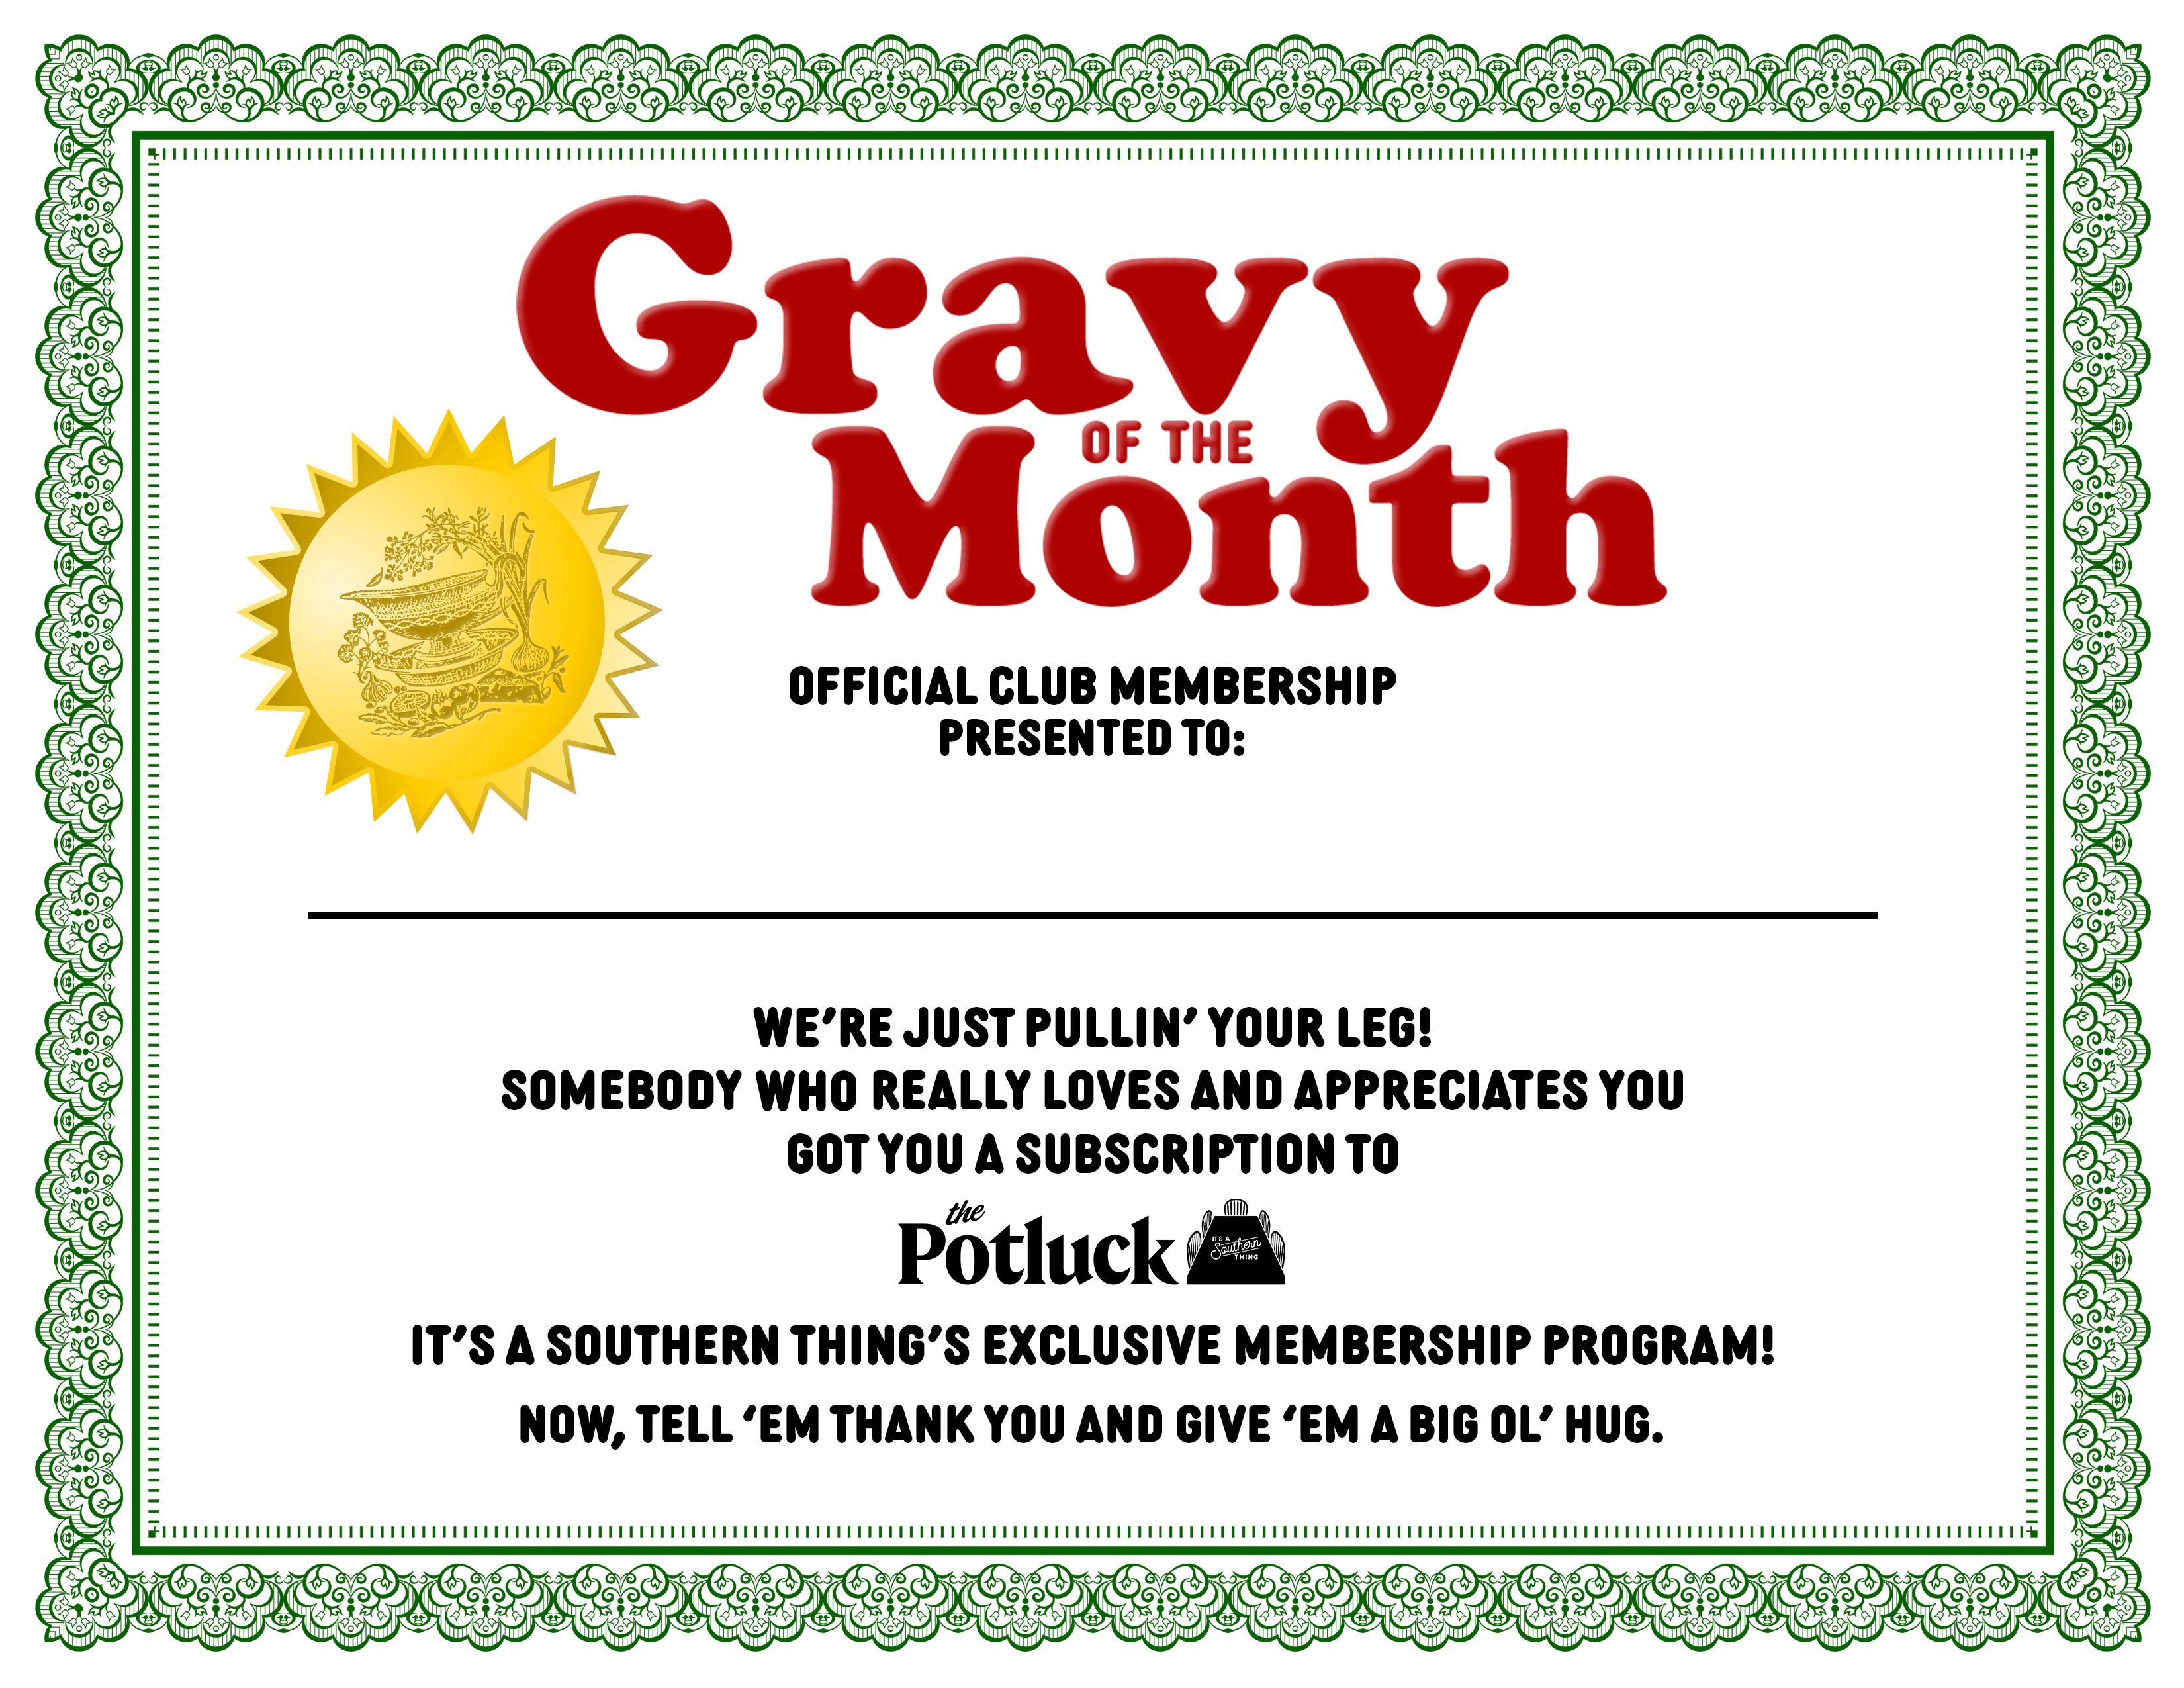 Potluck gift membership certificate